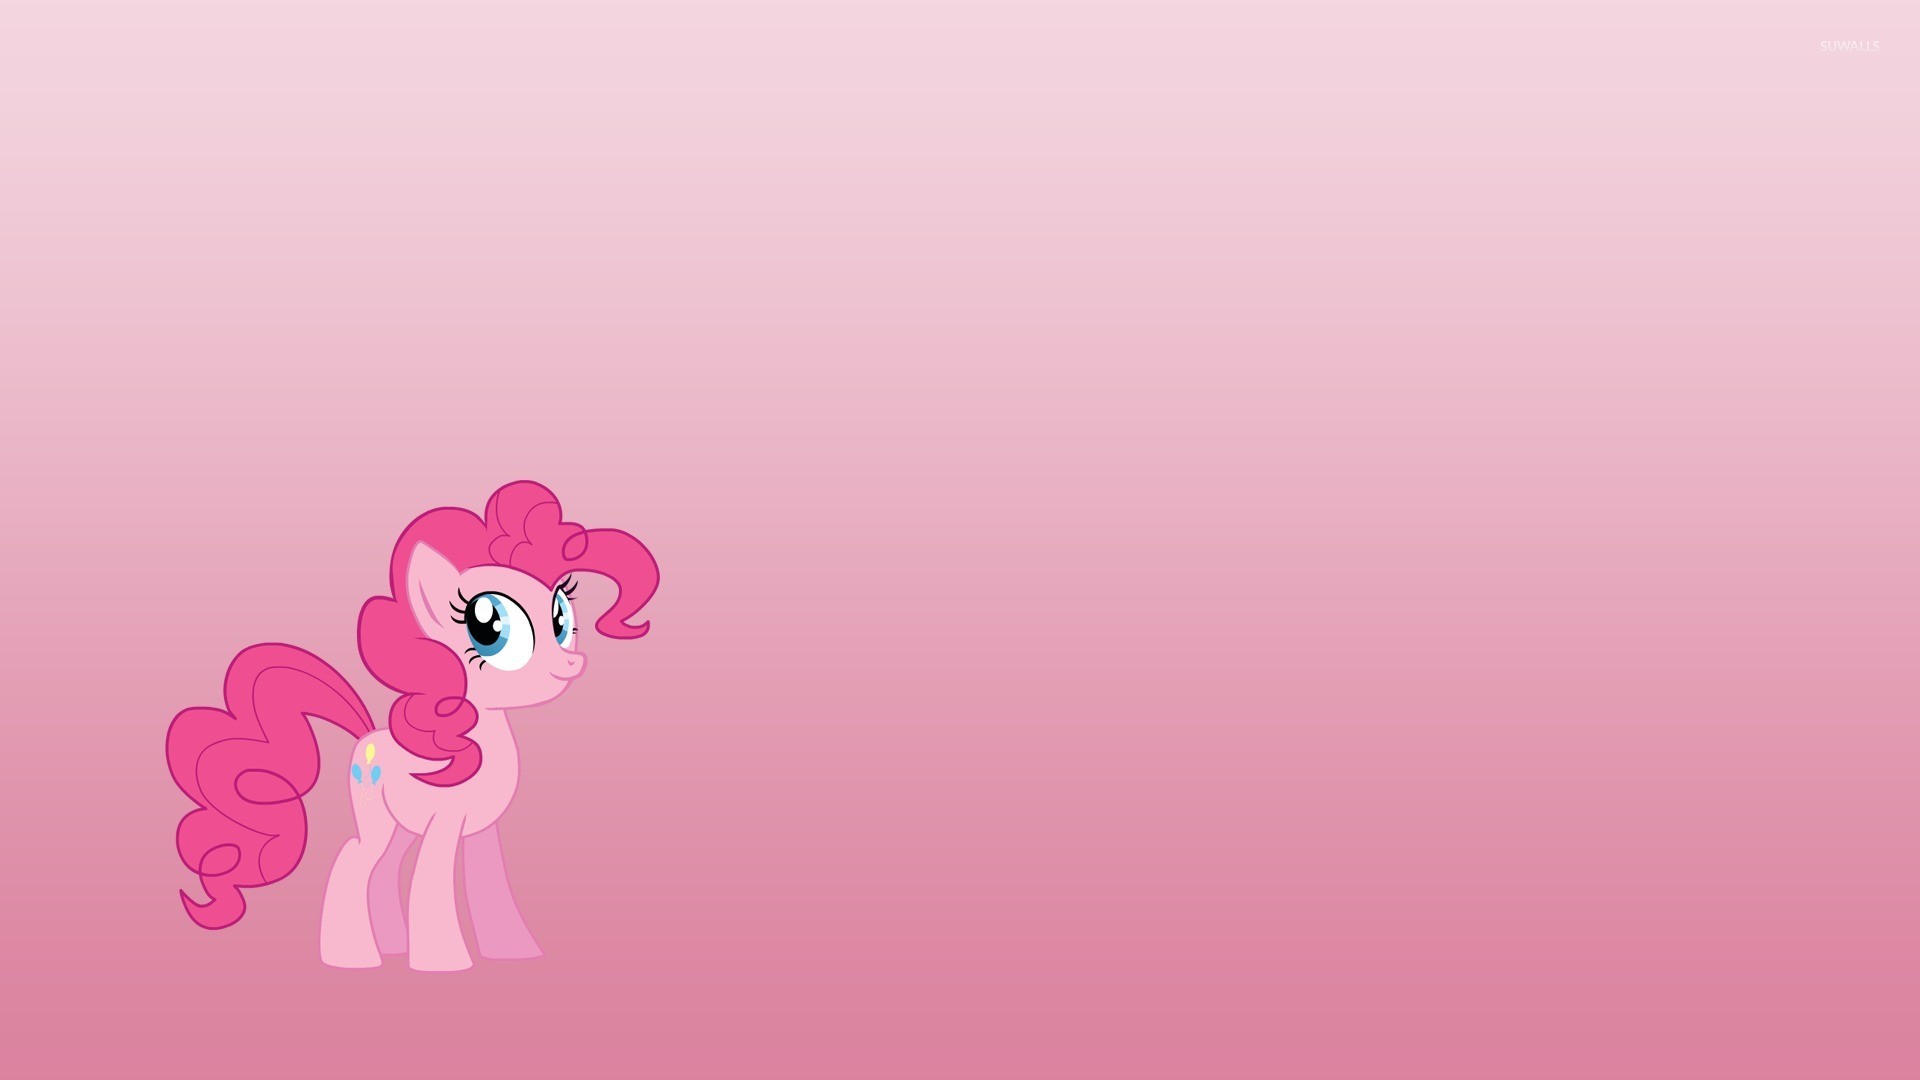 1920x1080 Cute Pinkie Pie from My Little Pony wallpaper  jpg